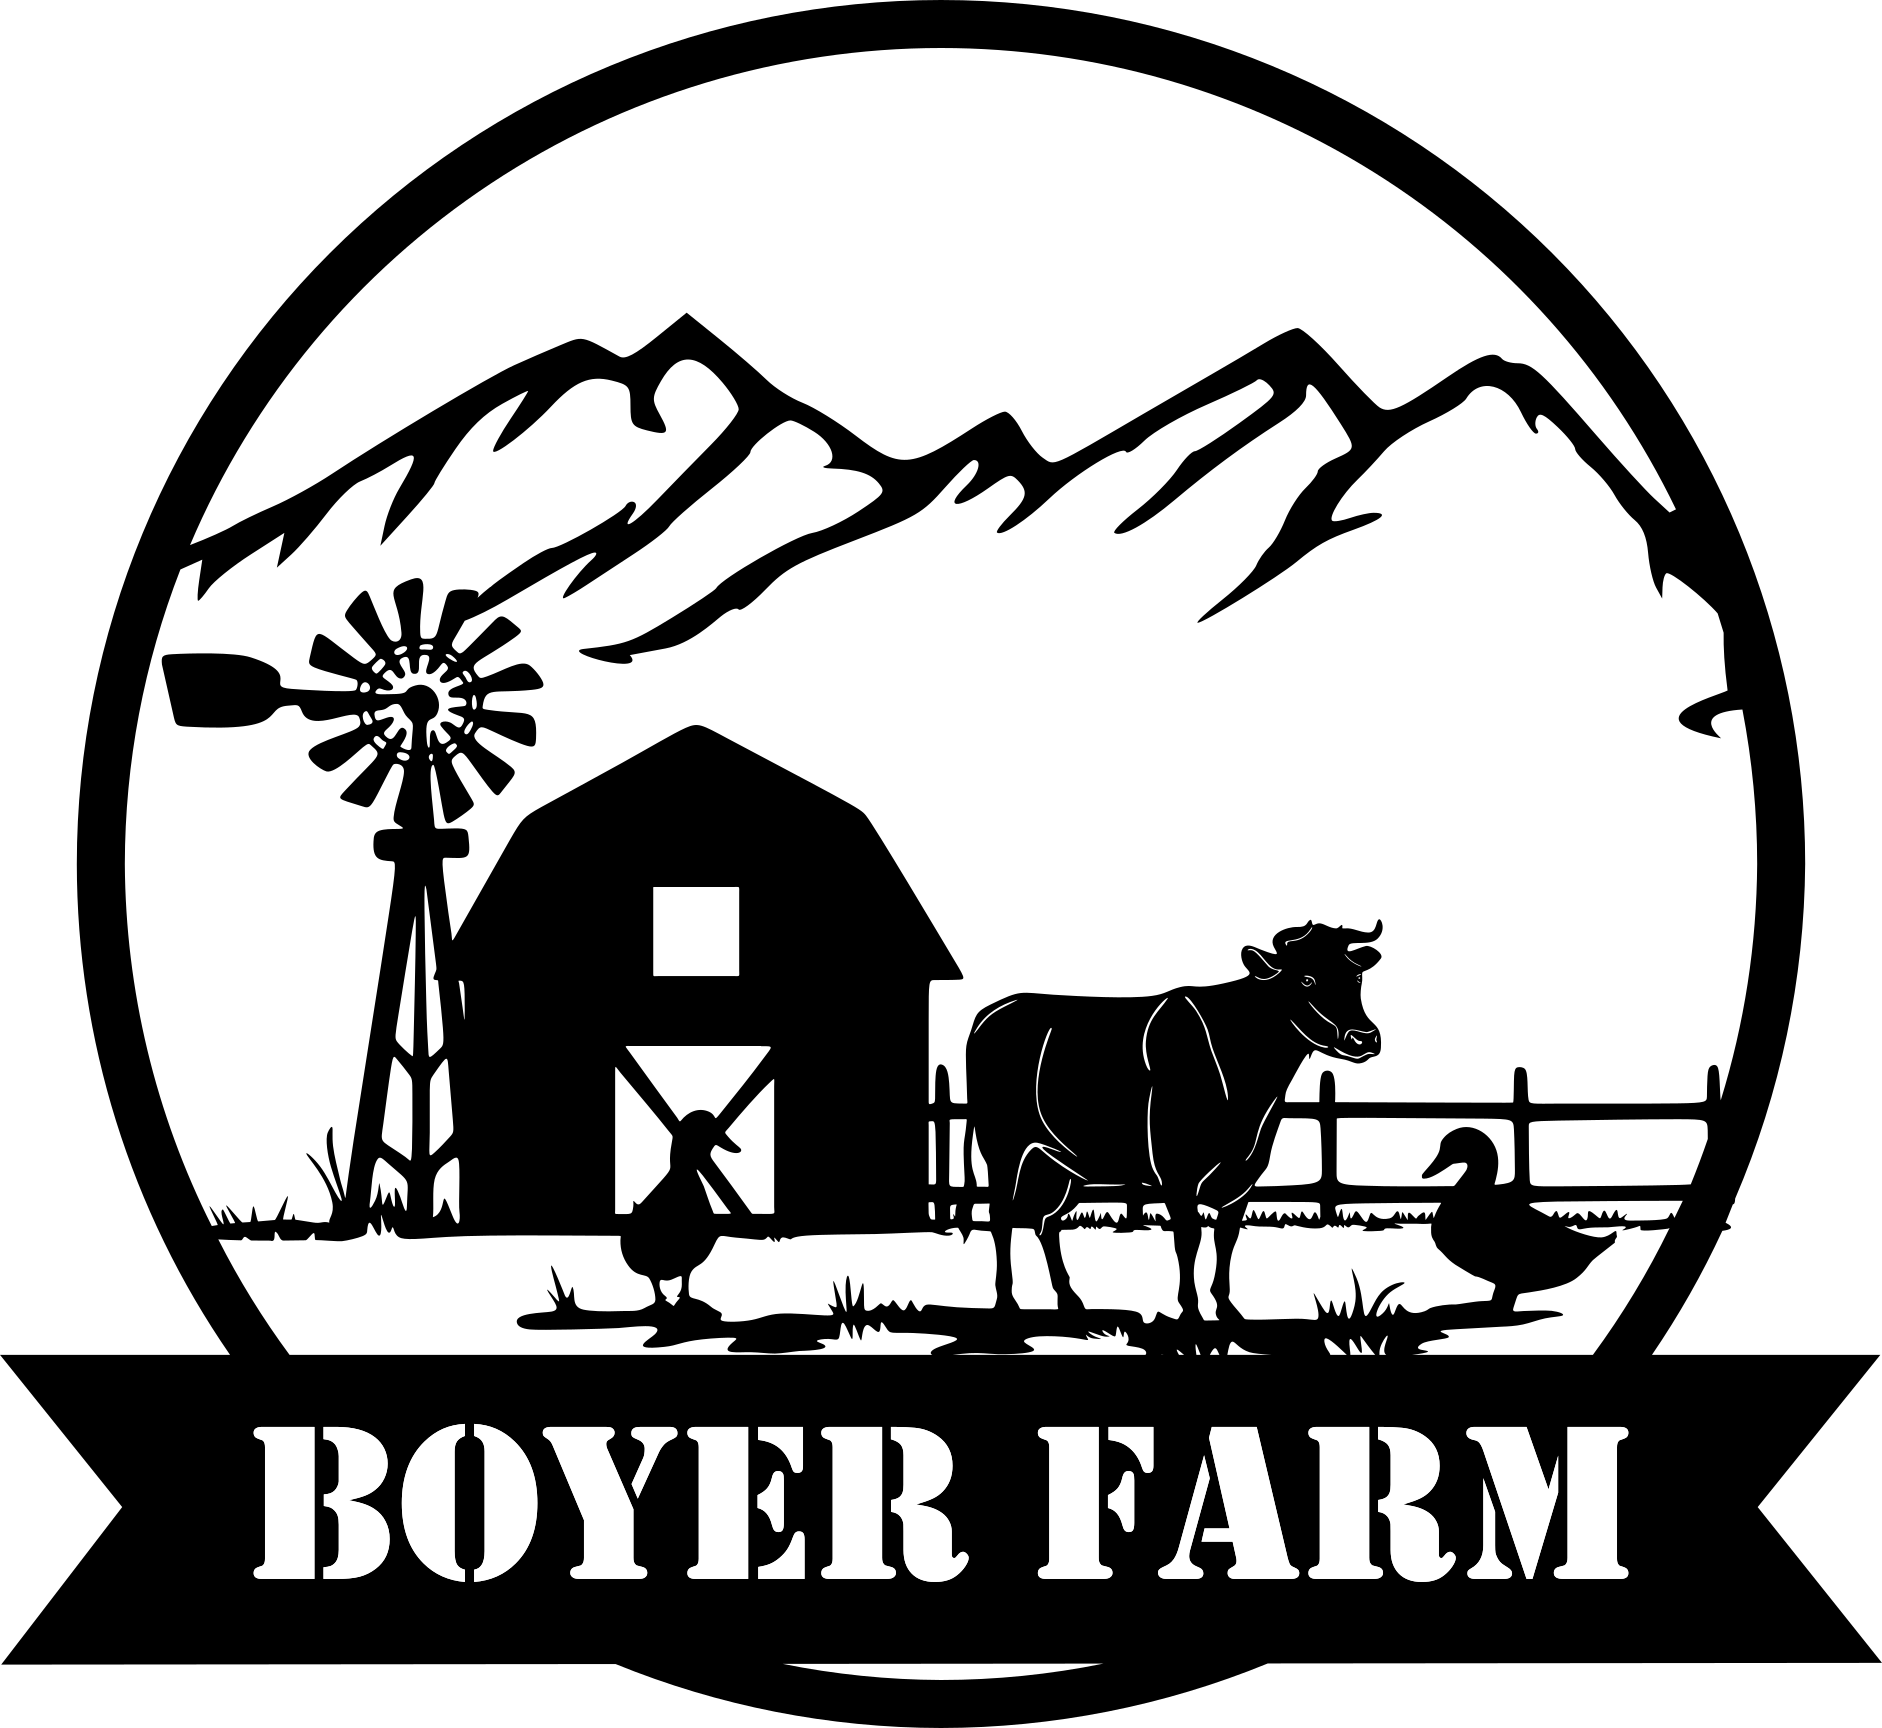 farm scene silhouette